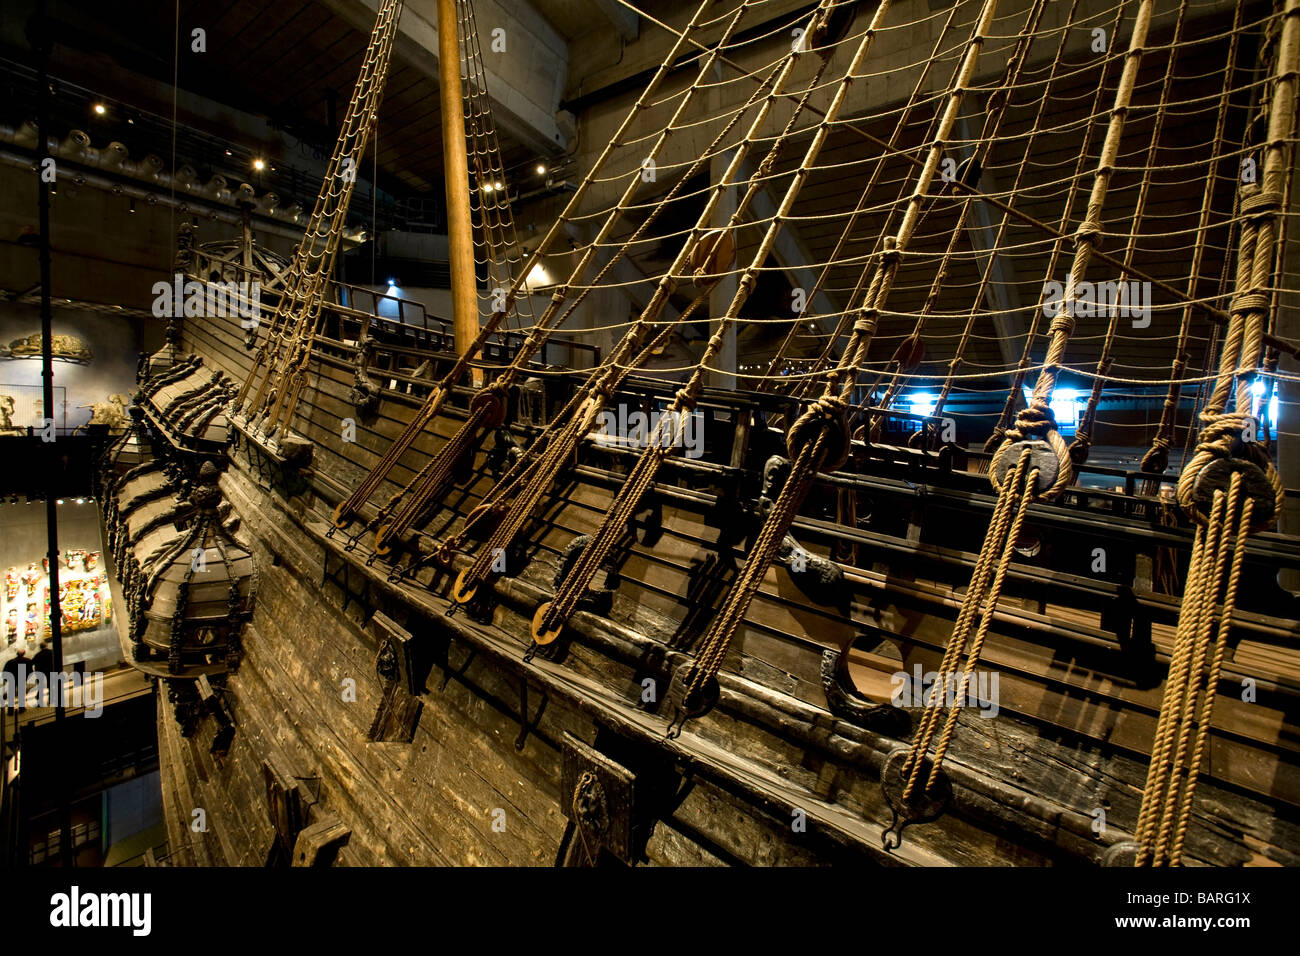 Le 17e siècle, un navire de guerre suédois Vasa, dans le musée Vasa, Stockholm, Suède Banque D'Images